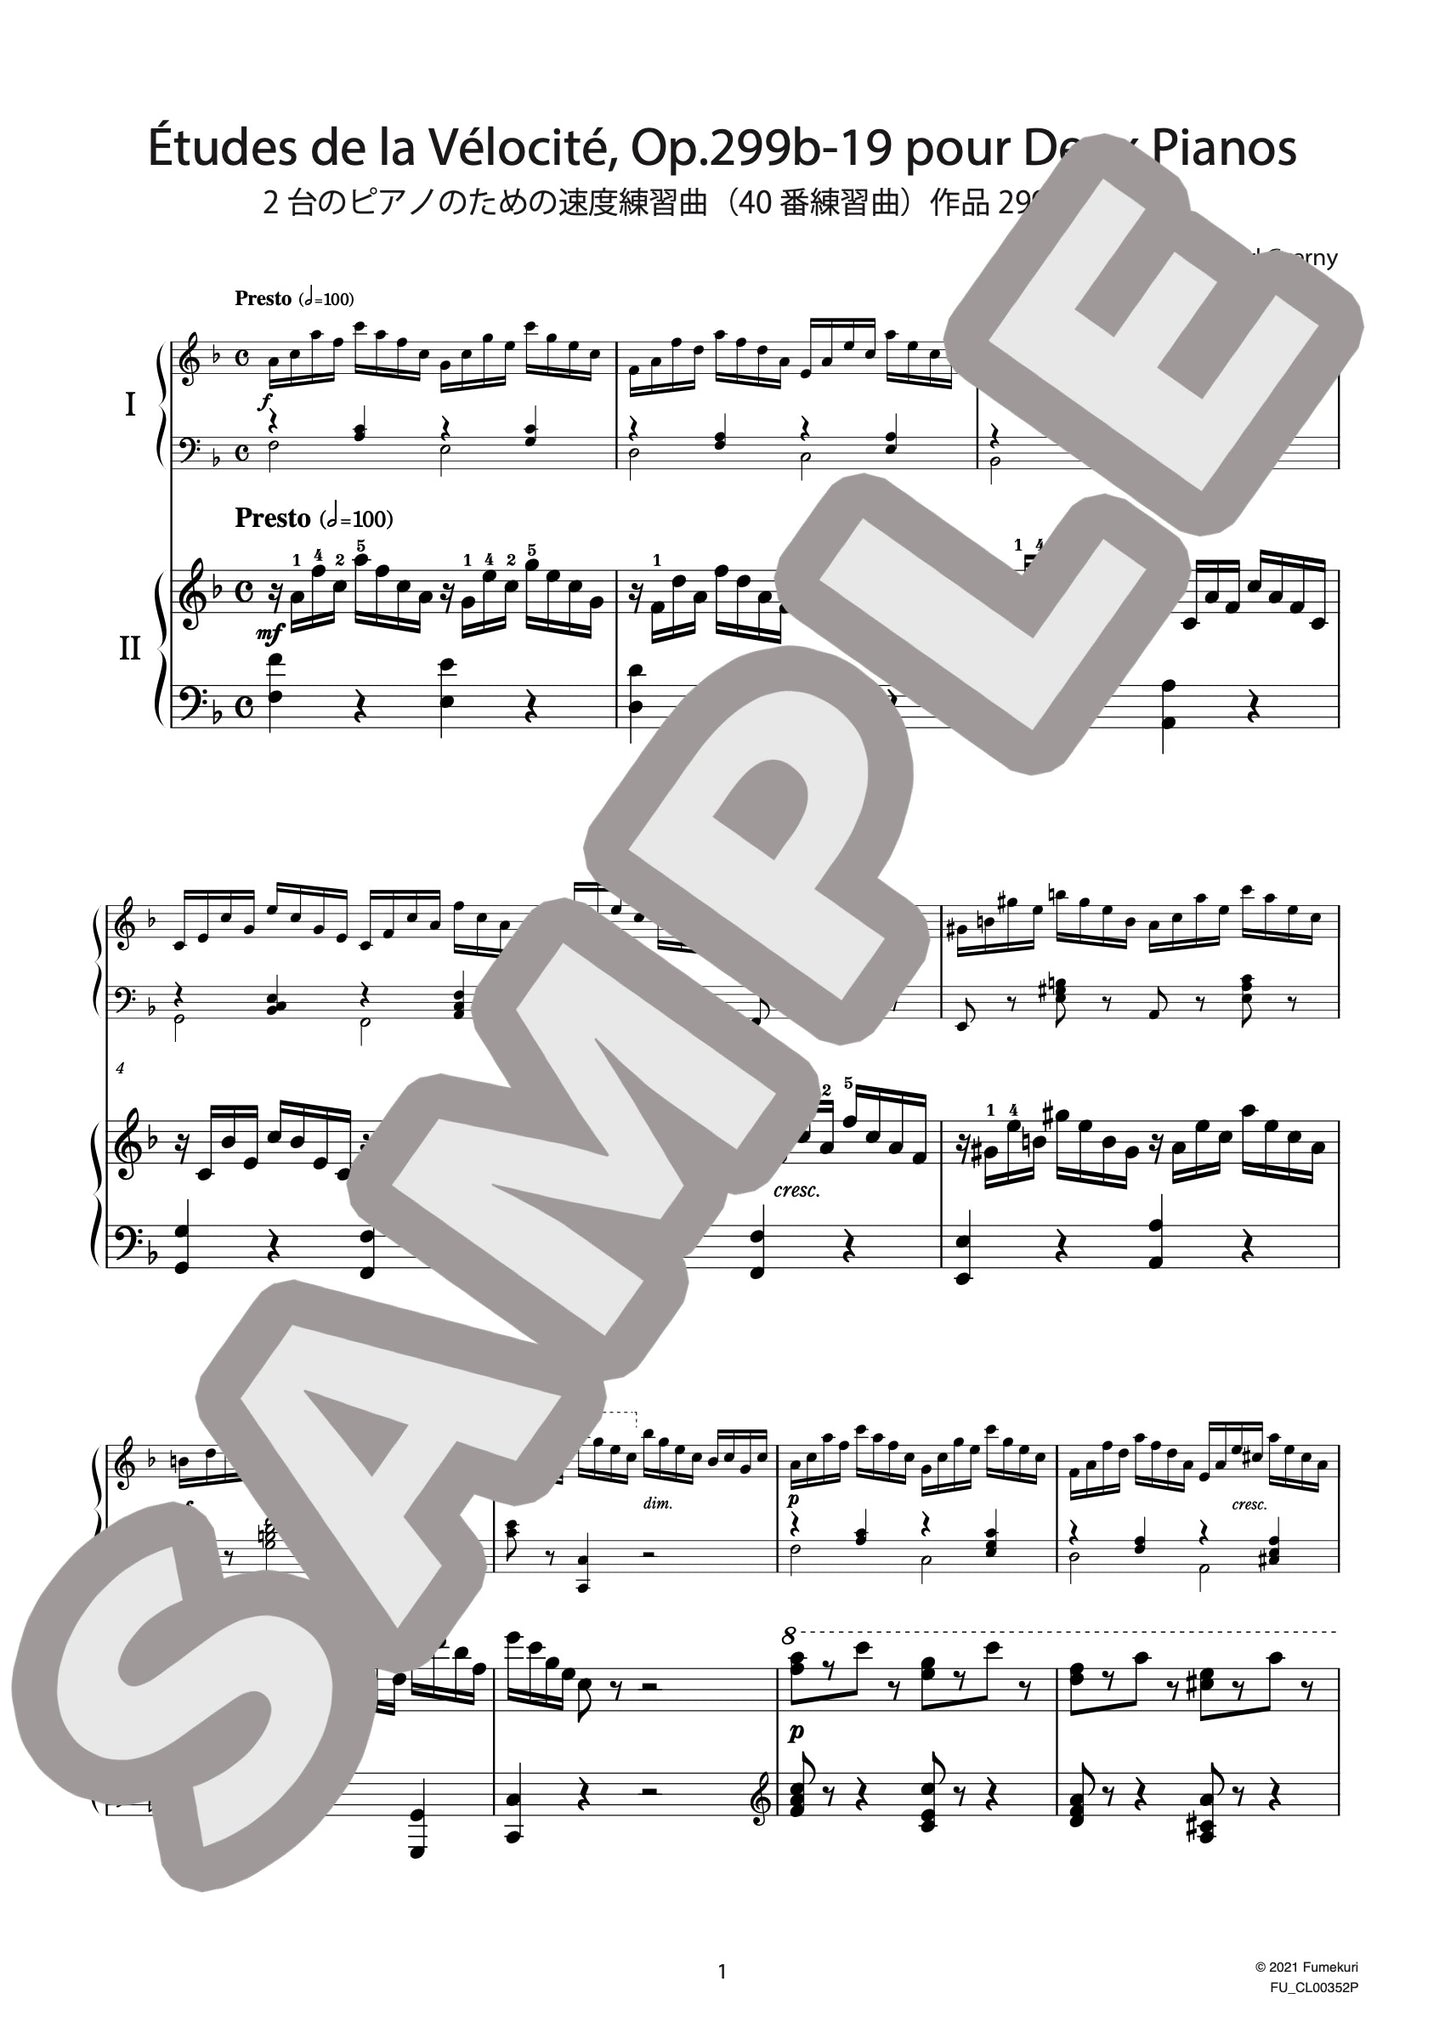 2台のピアノのための速度練習曲（40番練習曲）作品299b 第19番（CZERNY) / クラシック・オリジナル楽曲【中上級】